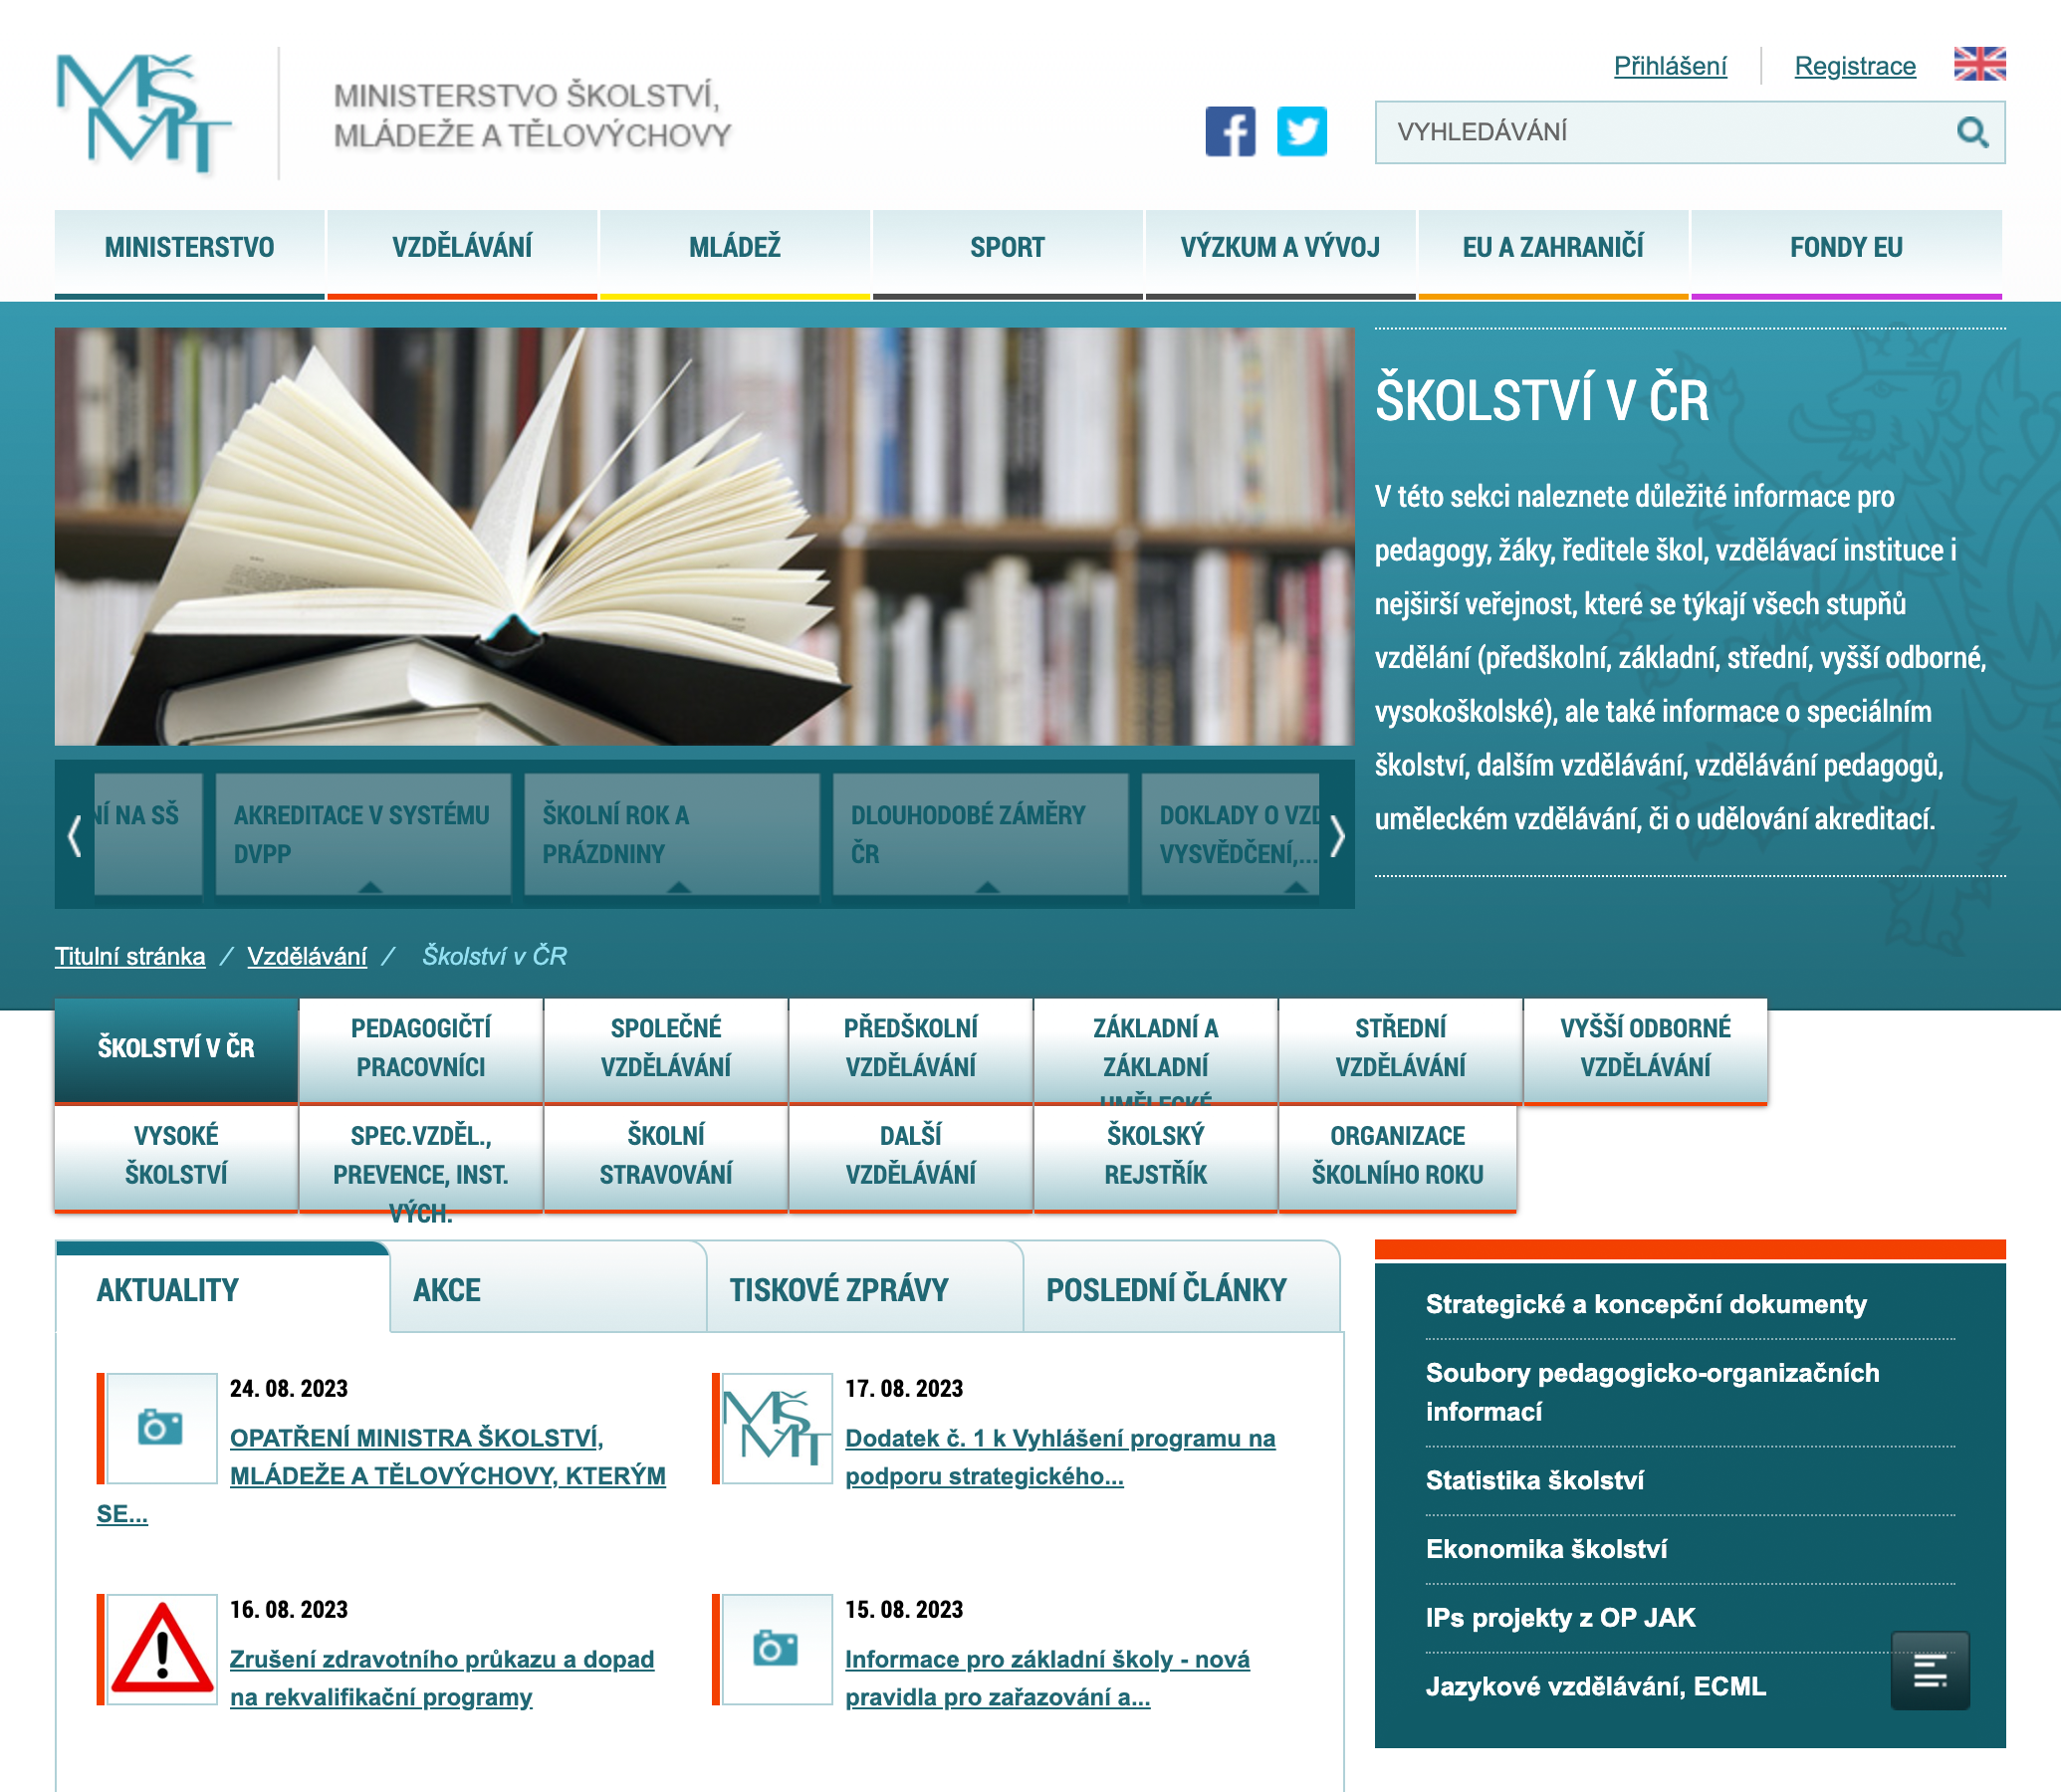 Сайт министерства образования, молодежи и спорта Чехии. Источник: msmt.cz